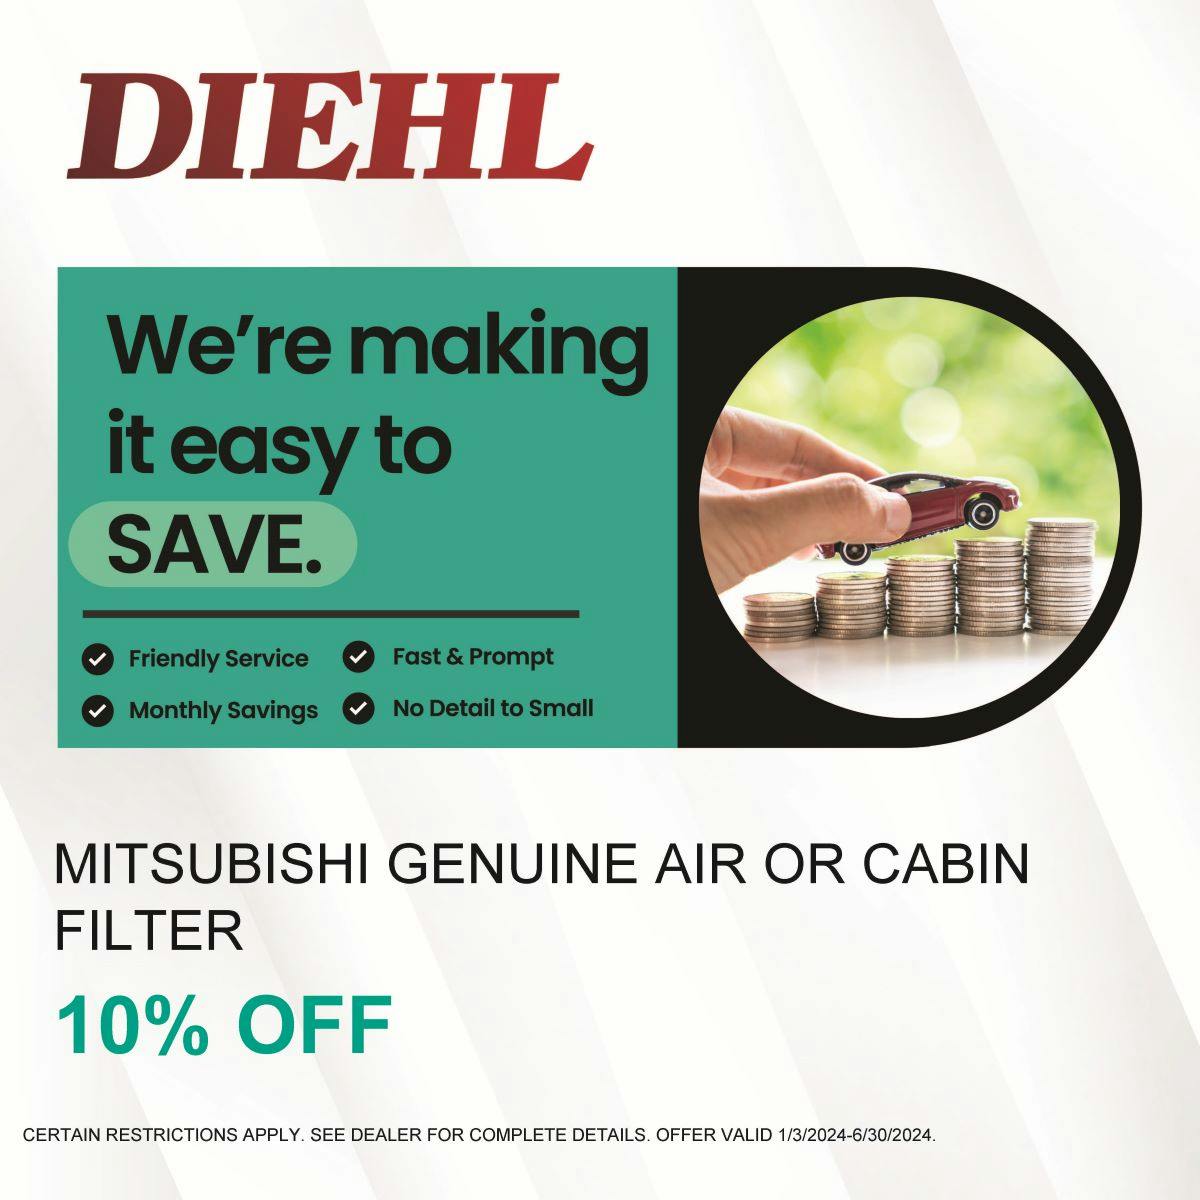 Mitsubishi Air or Cabin Filter Savings | Diehl Mitsubishi